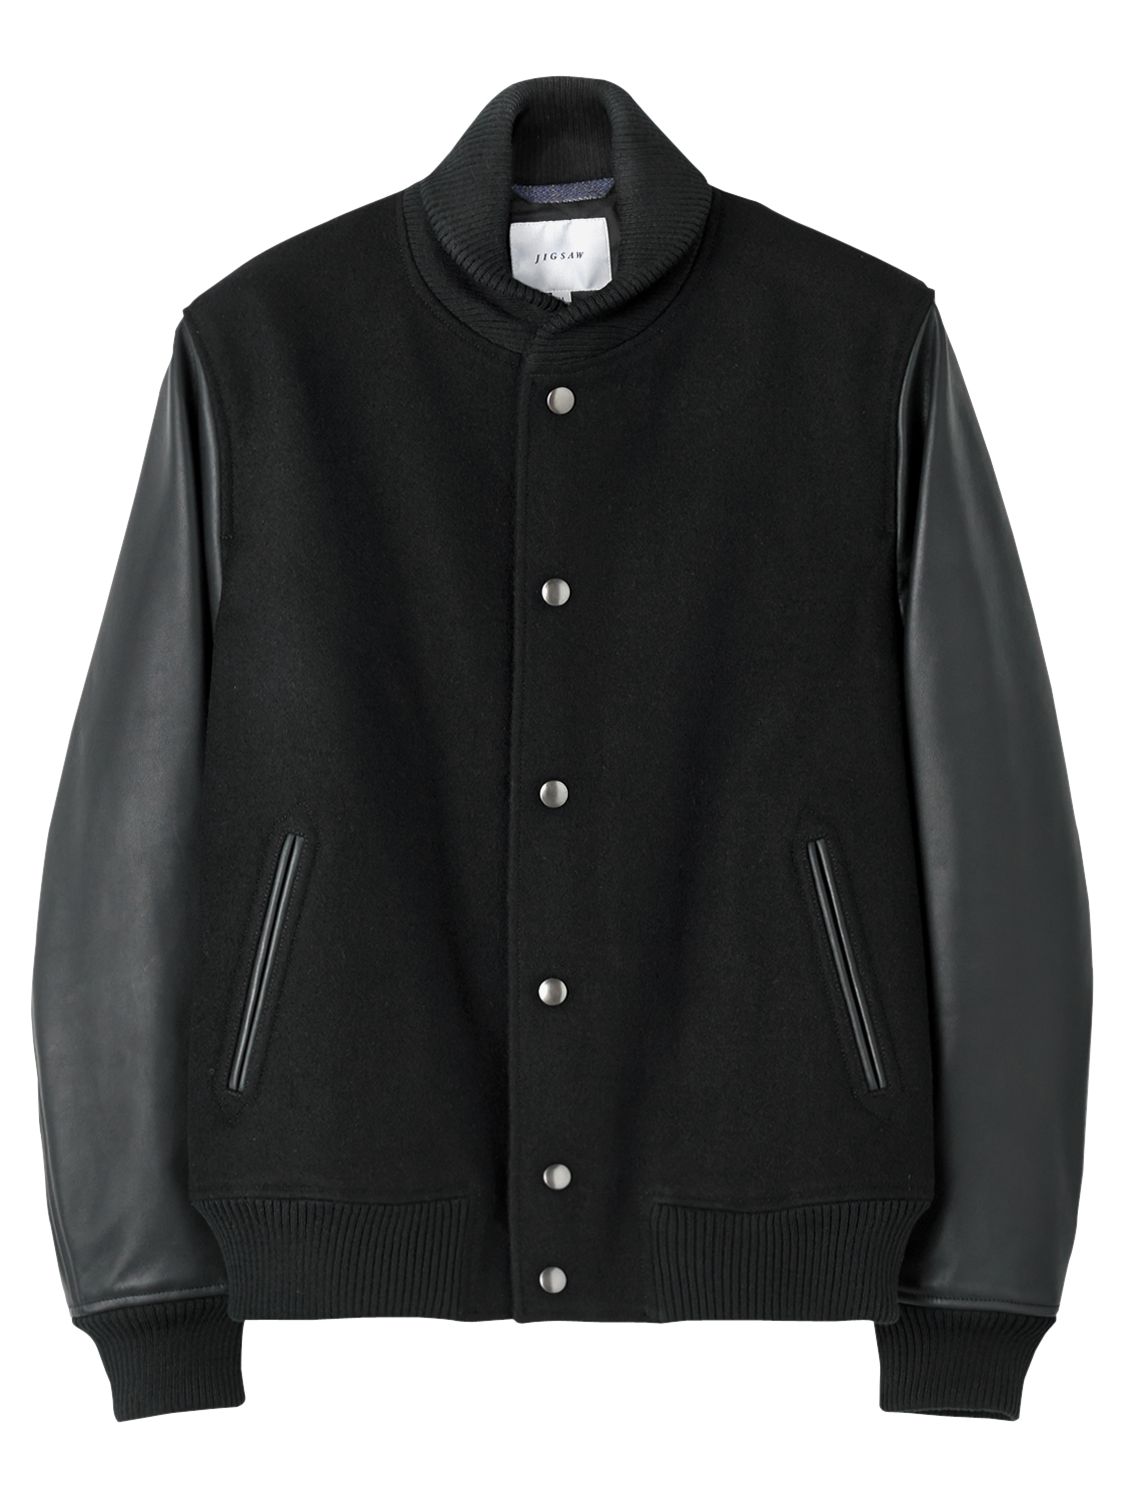 Jigsaw Leather Sleeve Bomber Jacket, Black at John Lewis & Partners